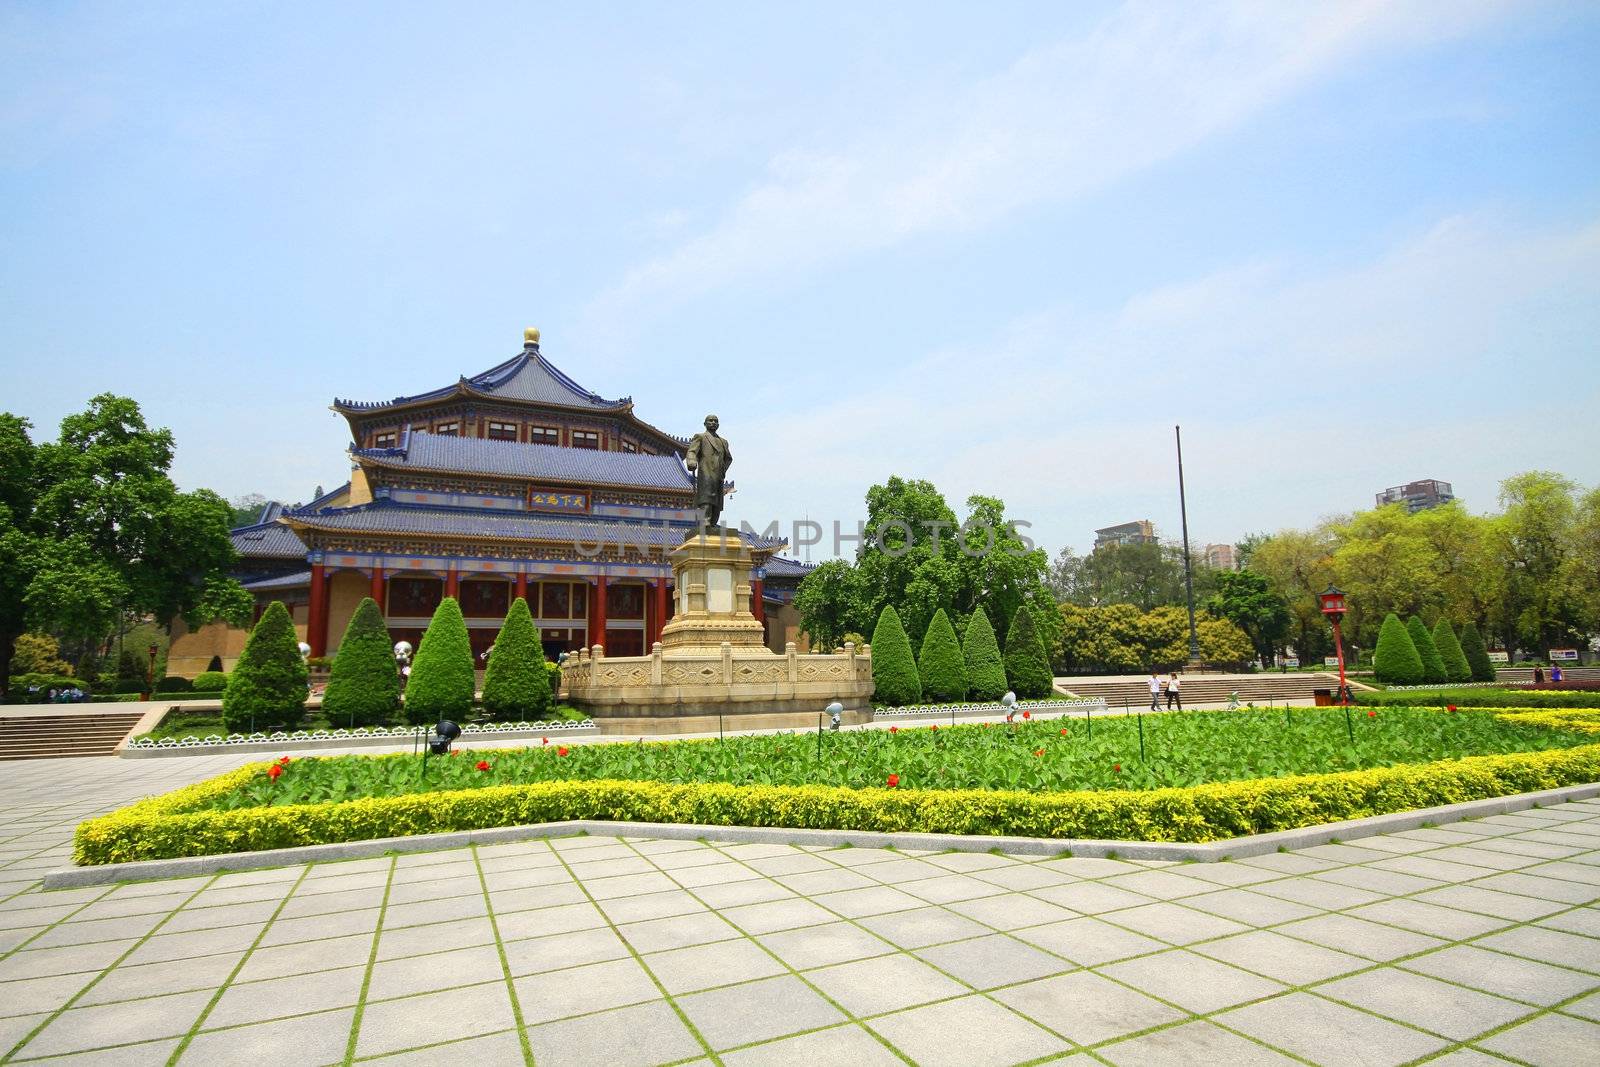 Sun Yat-sen Memorial Hall in Guangzhou, China 
